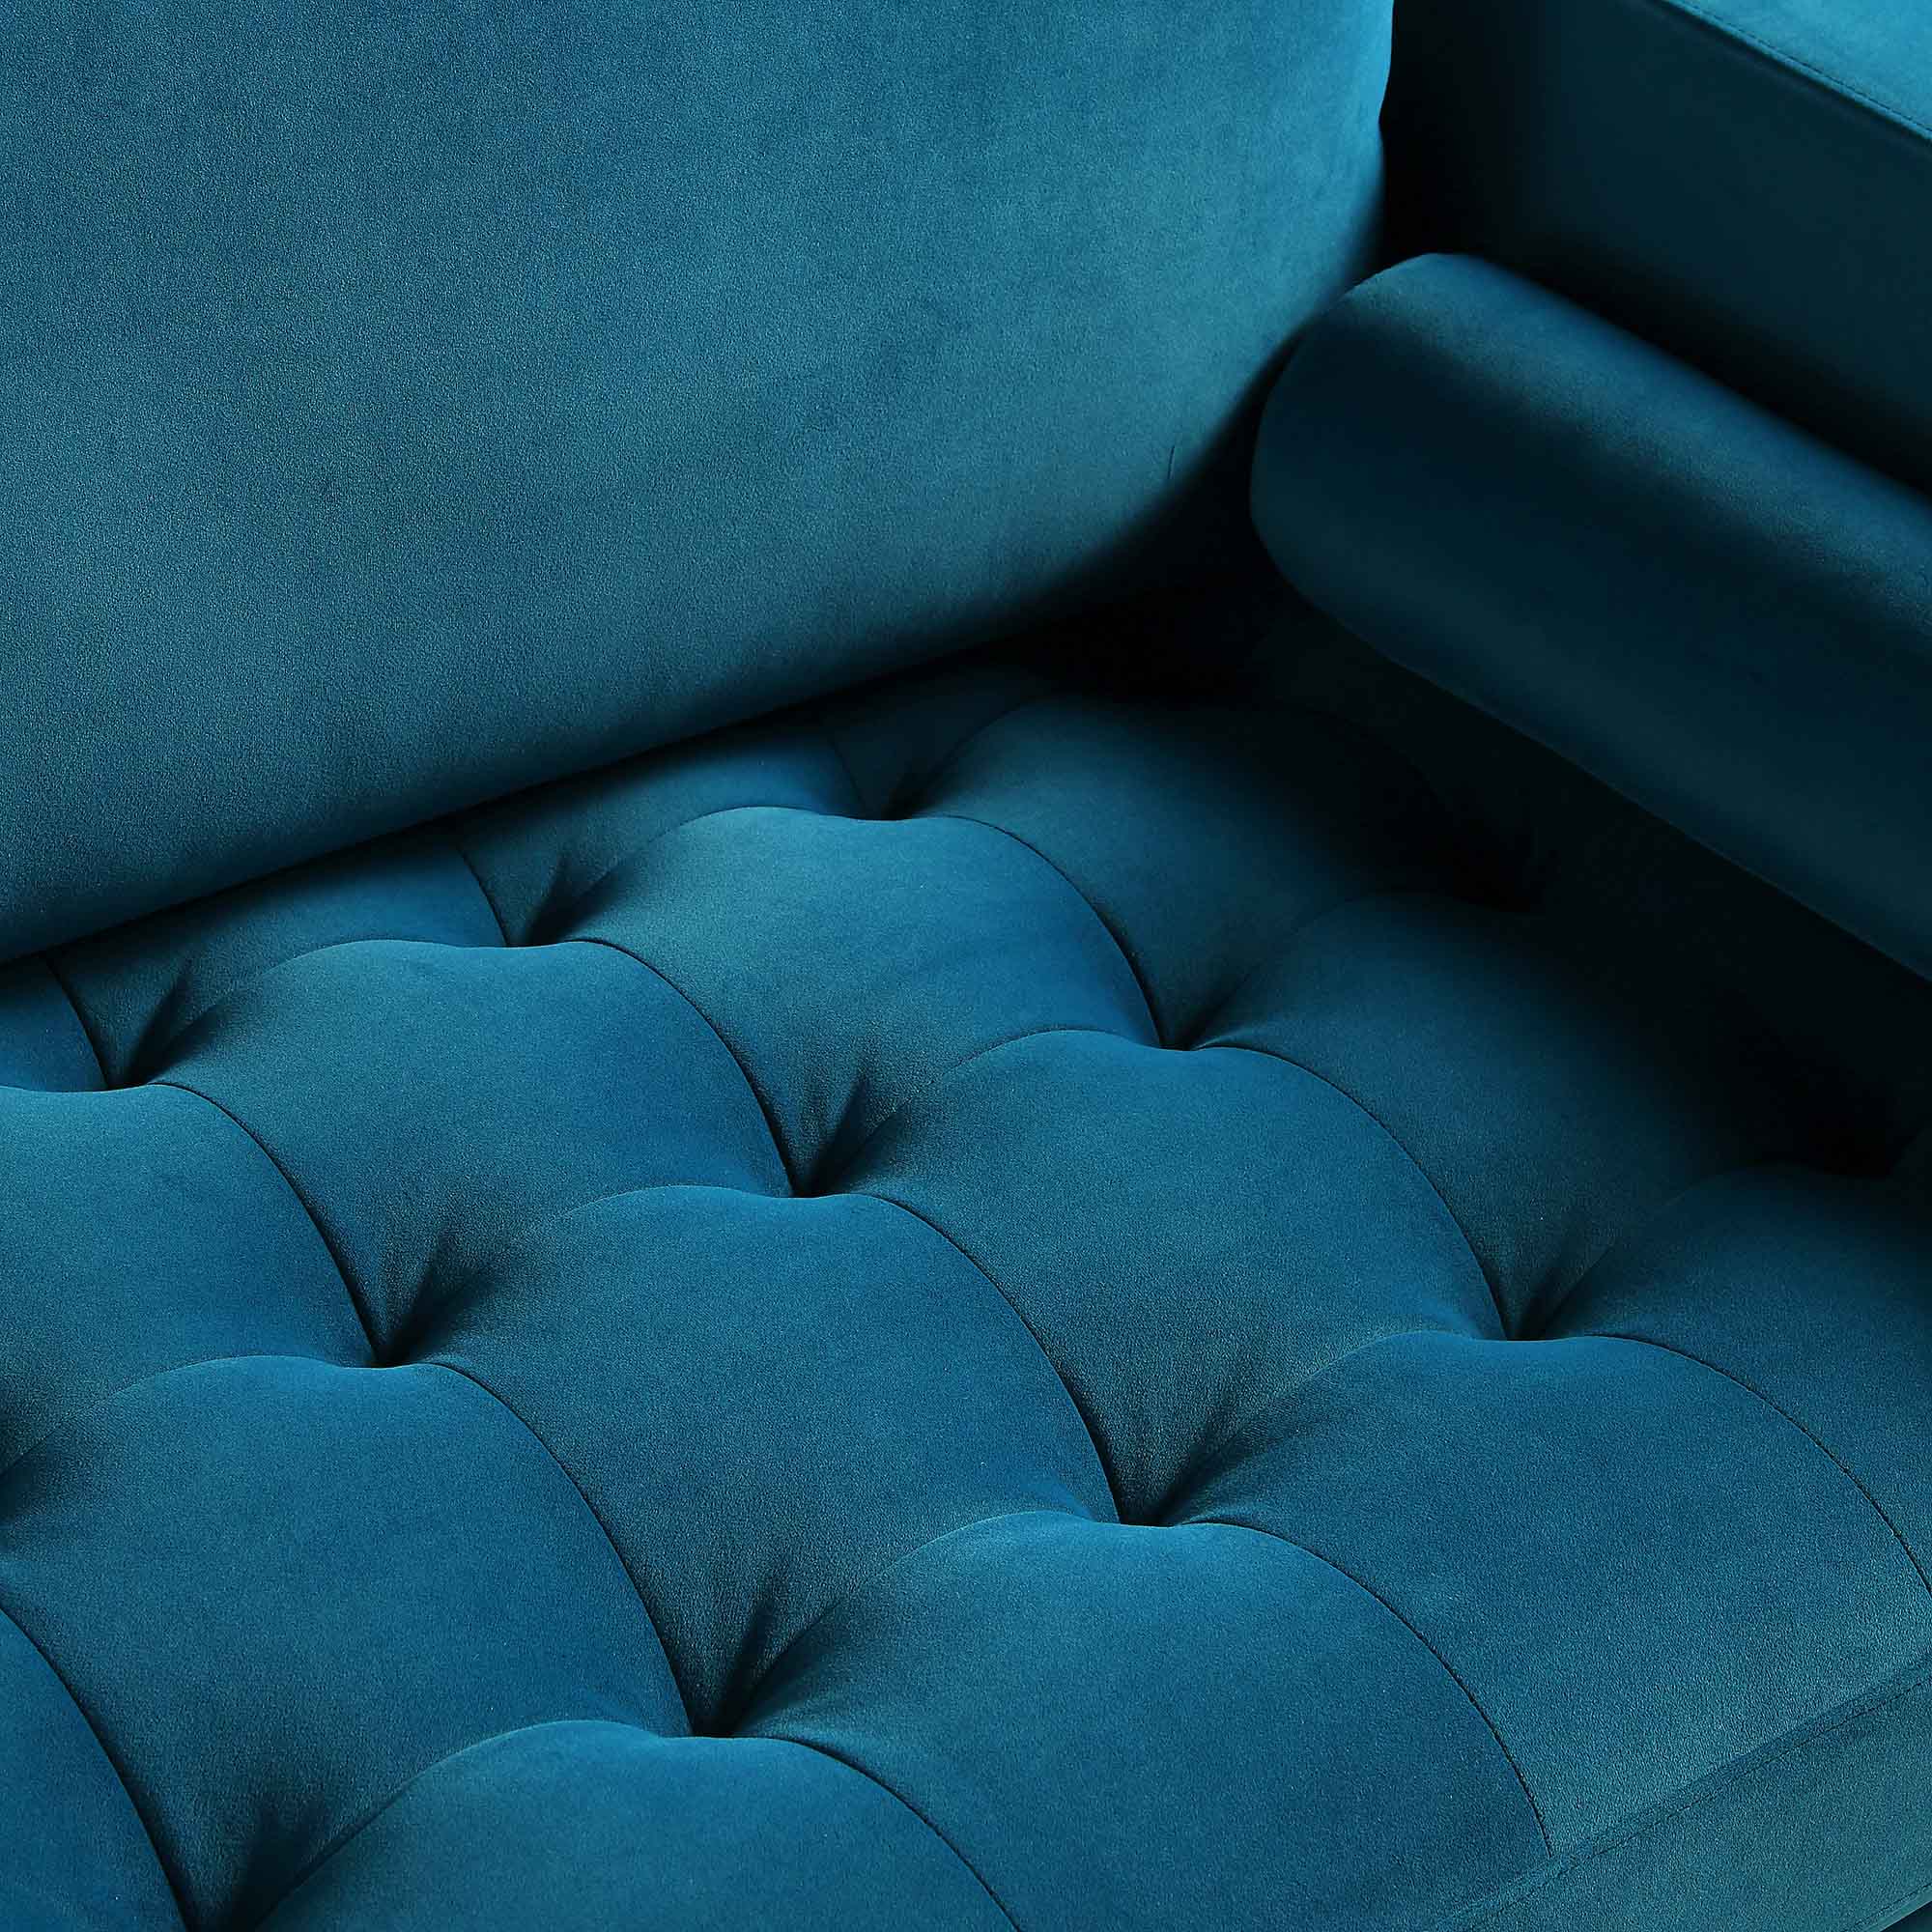 Henrietta Large 3-Seater Sofa, Teal Velvet